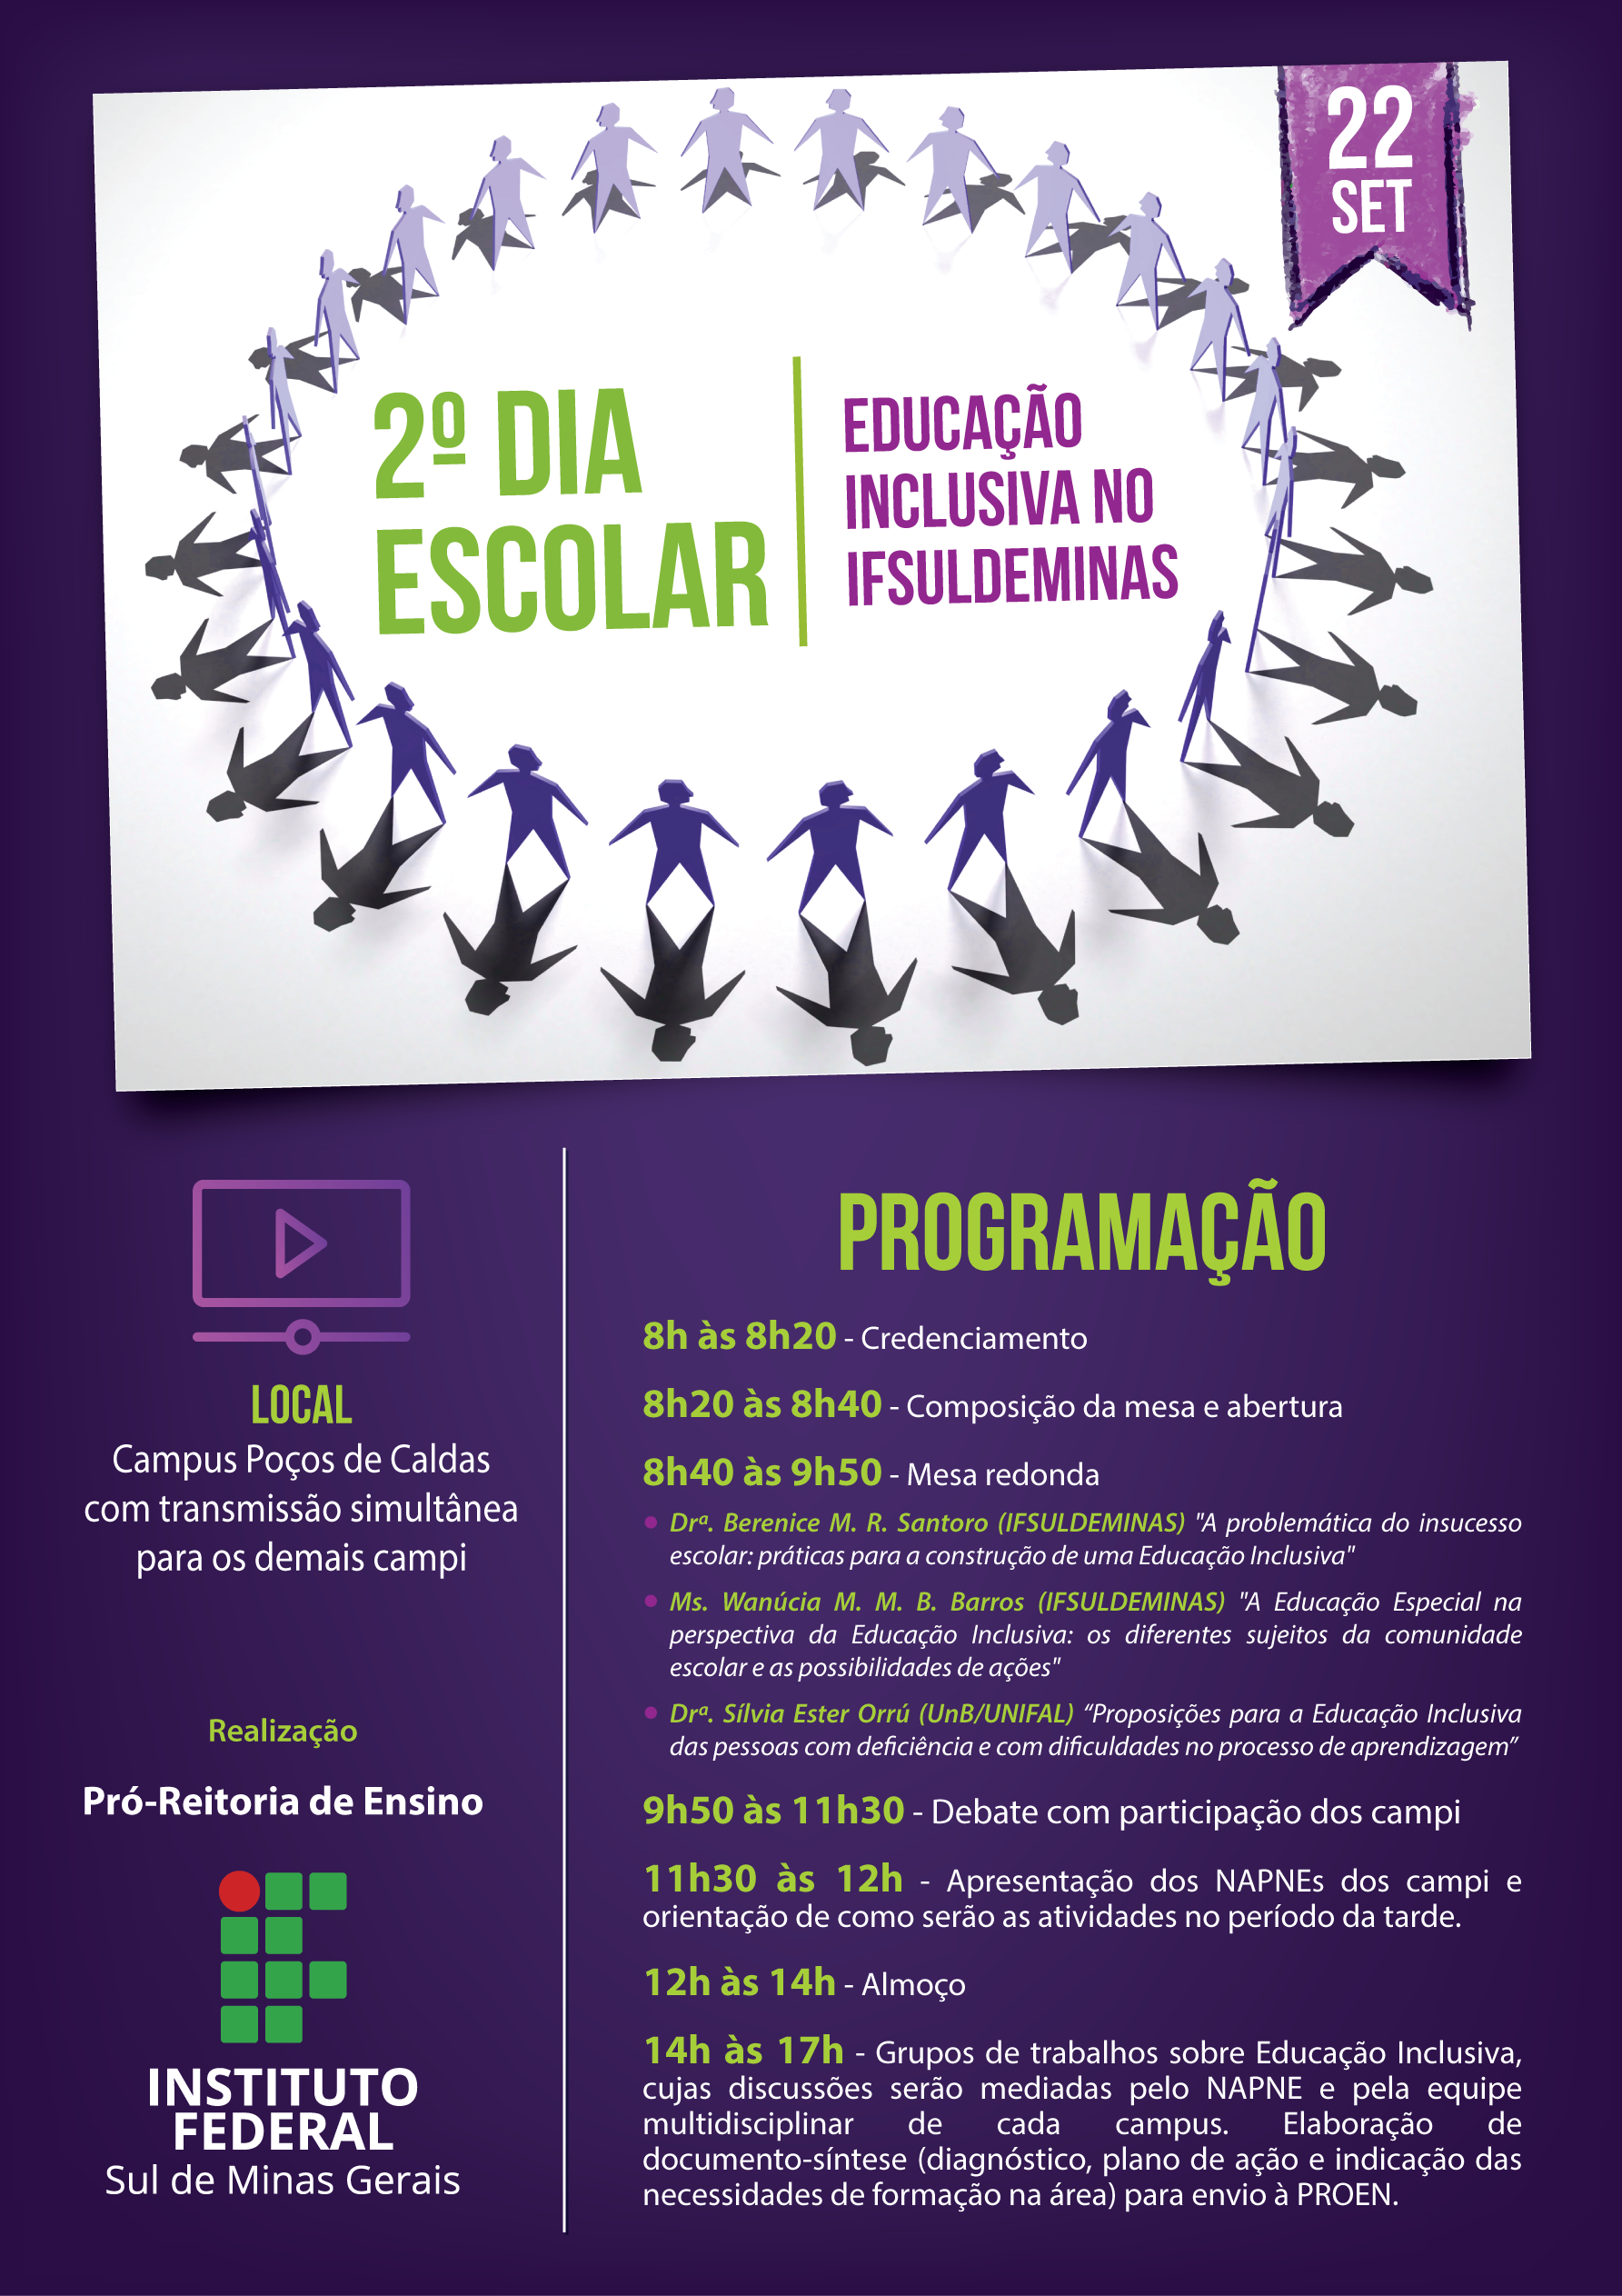 Cartaz de divulgação do 2º Dia Escolar do IFSULDEMINAS contendo a programação que consta no corpo do texto,